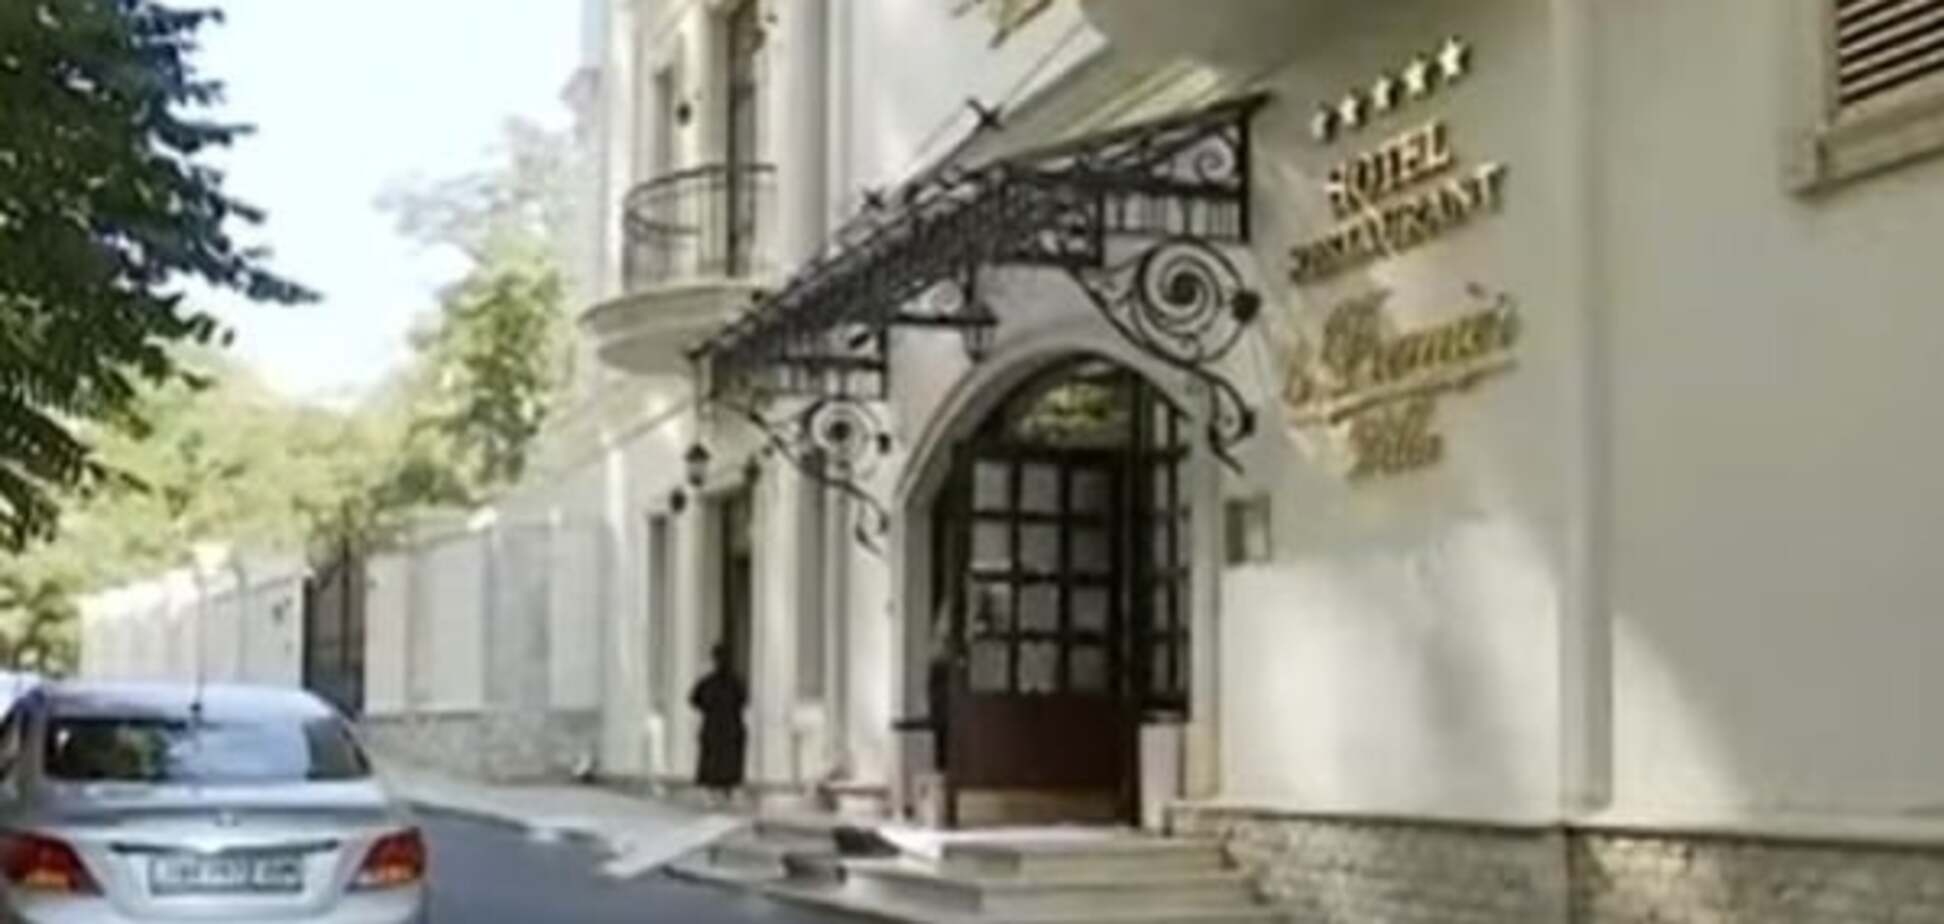 Захоплення готелю в Одесі: сторони конфлікту прокоментували інцидент